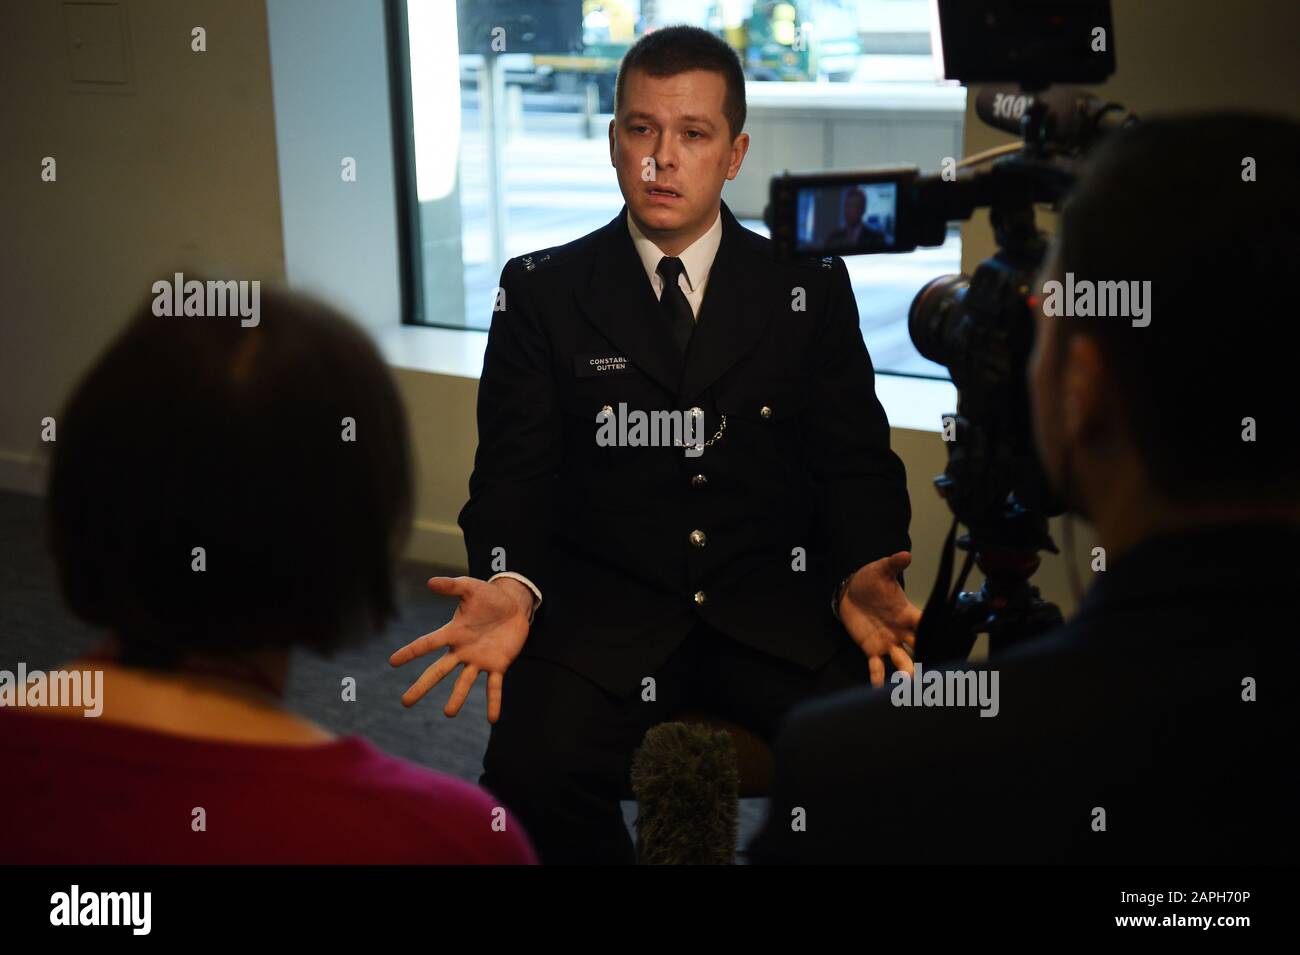 PC Stuart Outten parlant aux médias à New Scotland Yard à Londres. Muhammad Rodwan, 56 ans, a été reconnu coupable à la vieille Bailey de se blesser avec intention mais non coupable de possession d'une arme offensive et de tentative de meurtre pour son attaque contre Pc Outten en août 2019. Banque D'Images